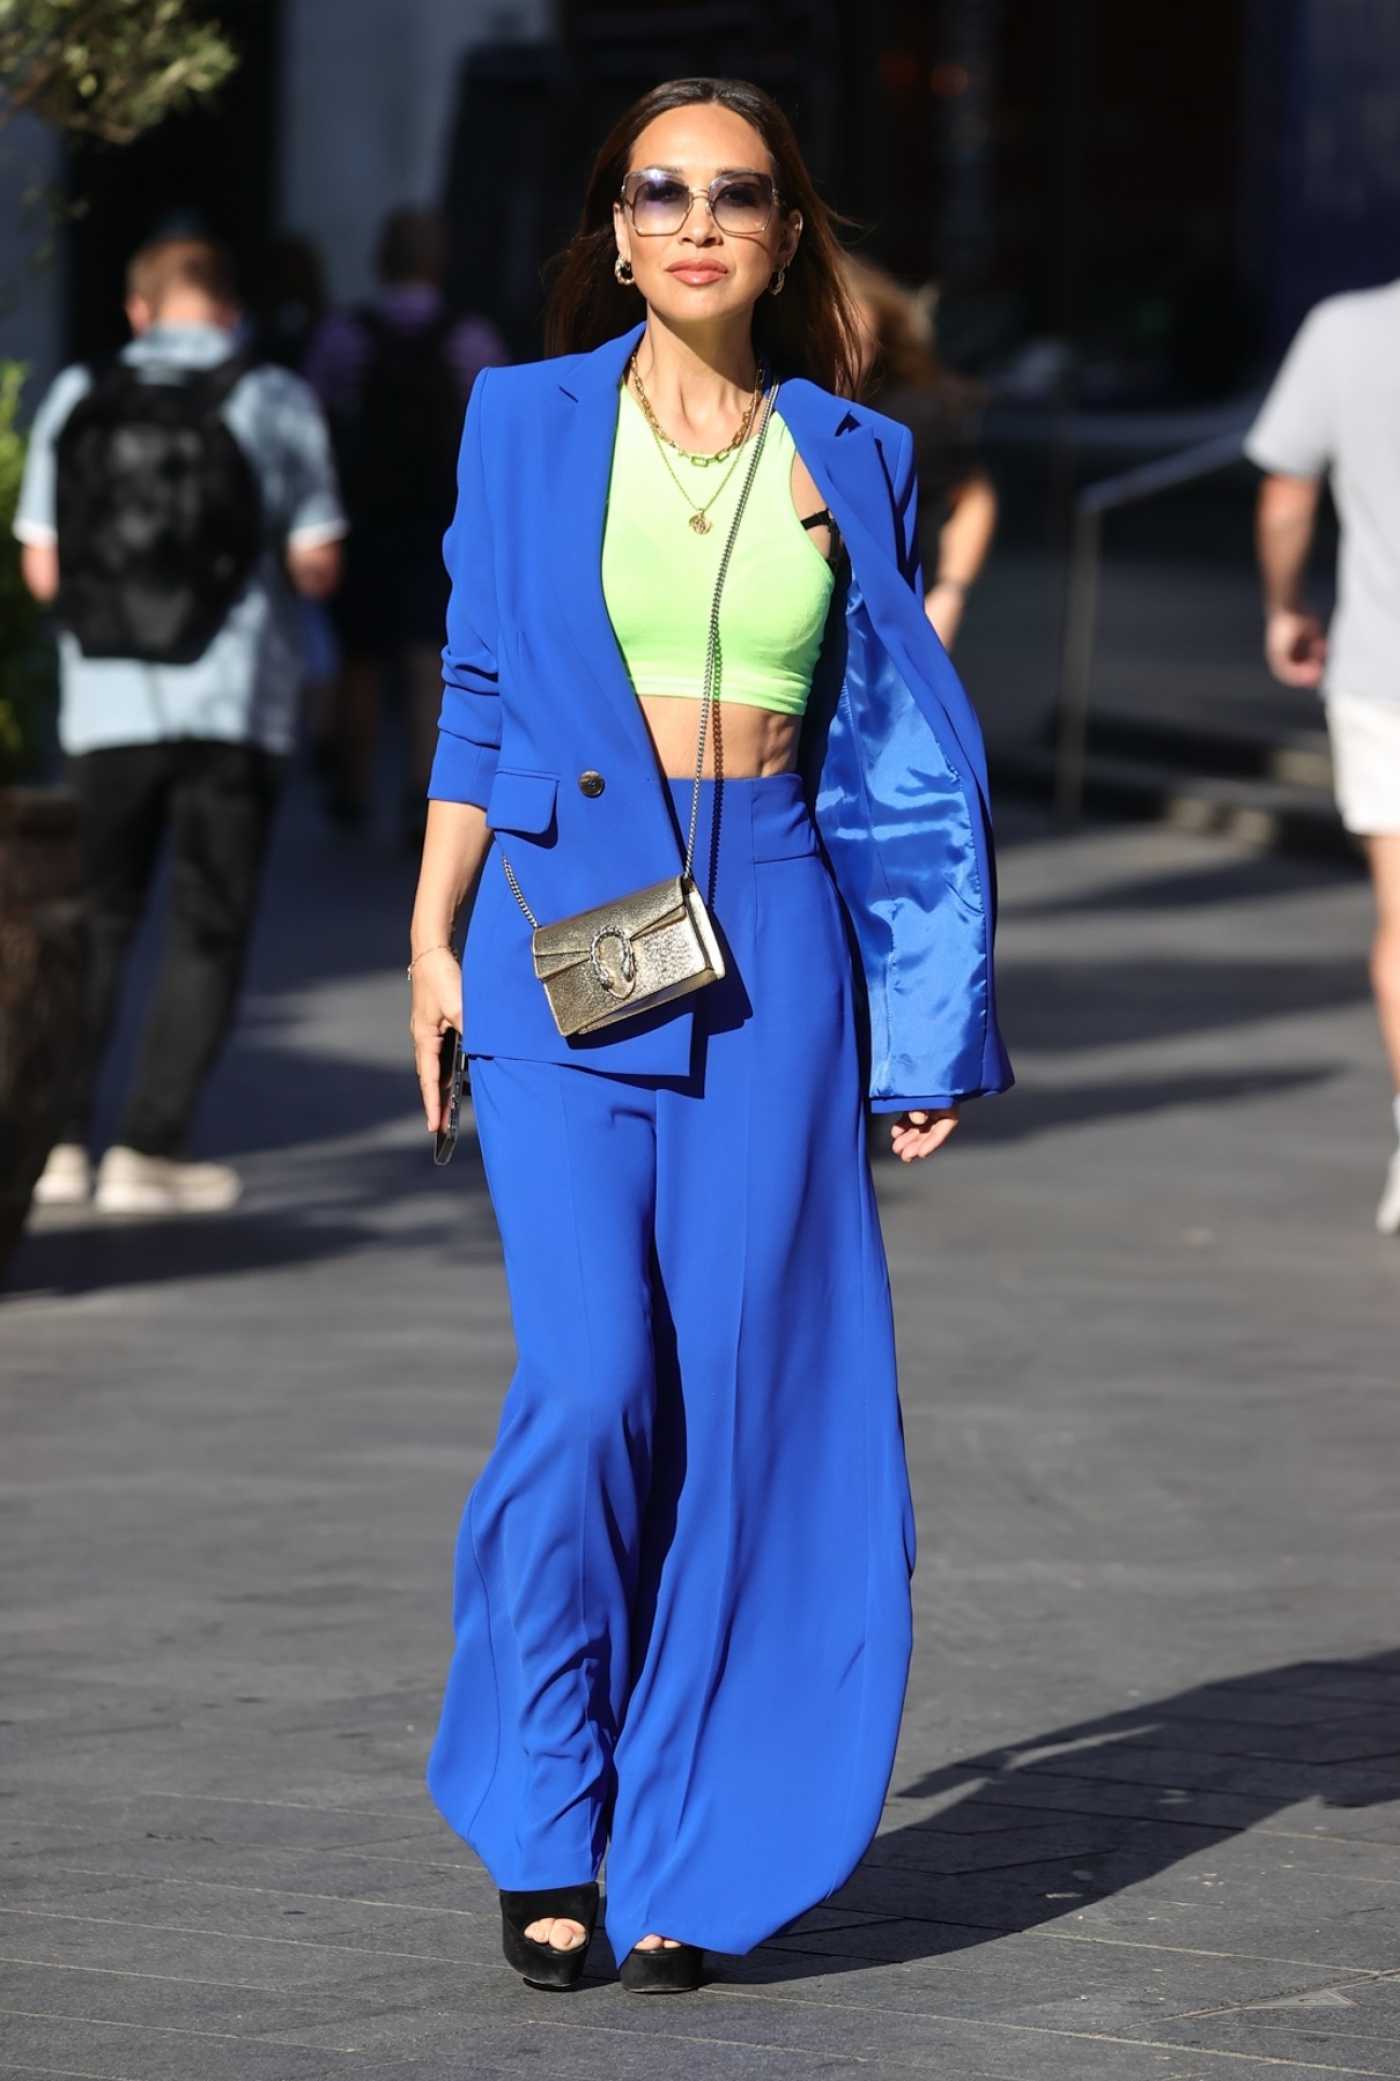 Myleene Klass in Electric Blue Trouser Suit Was Seen Out in Soho in London 08/26/2022